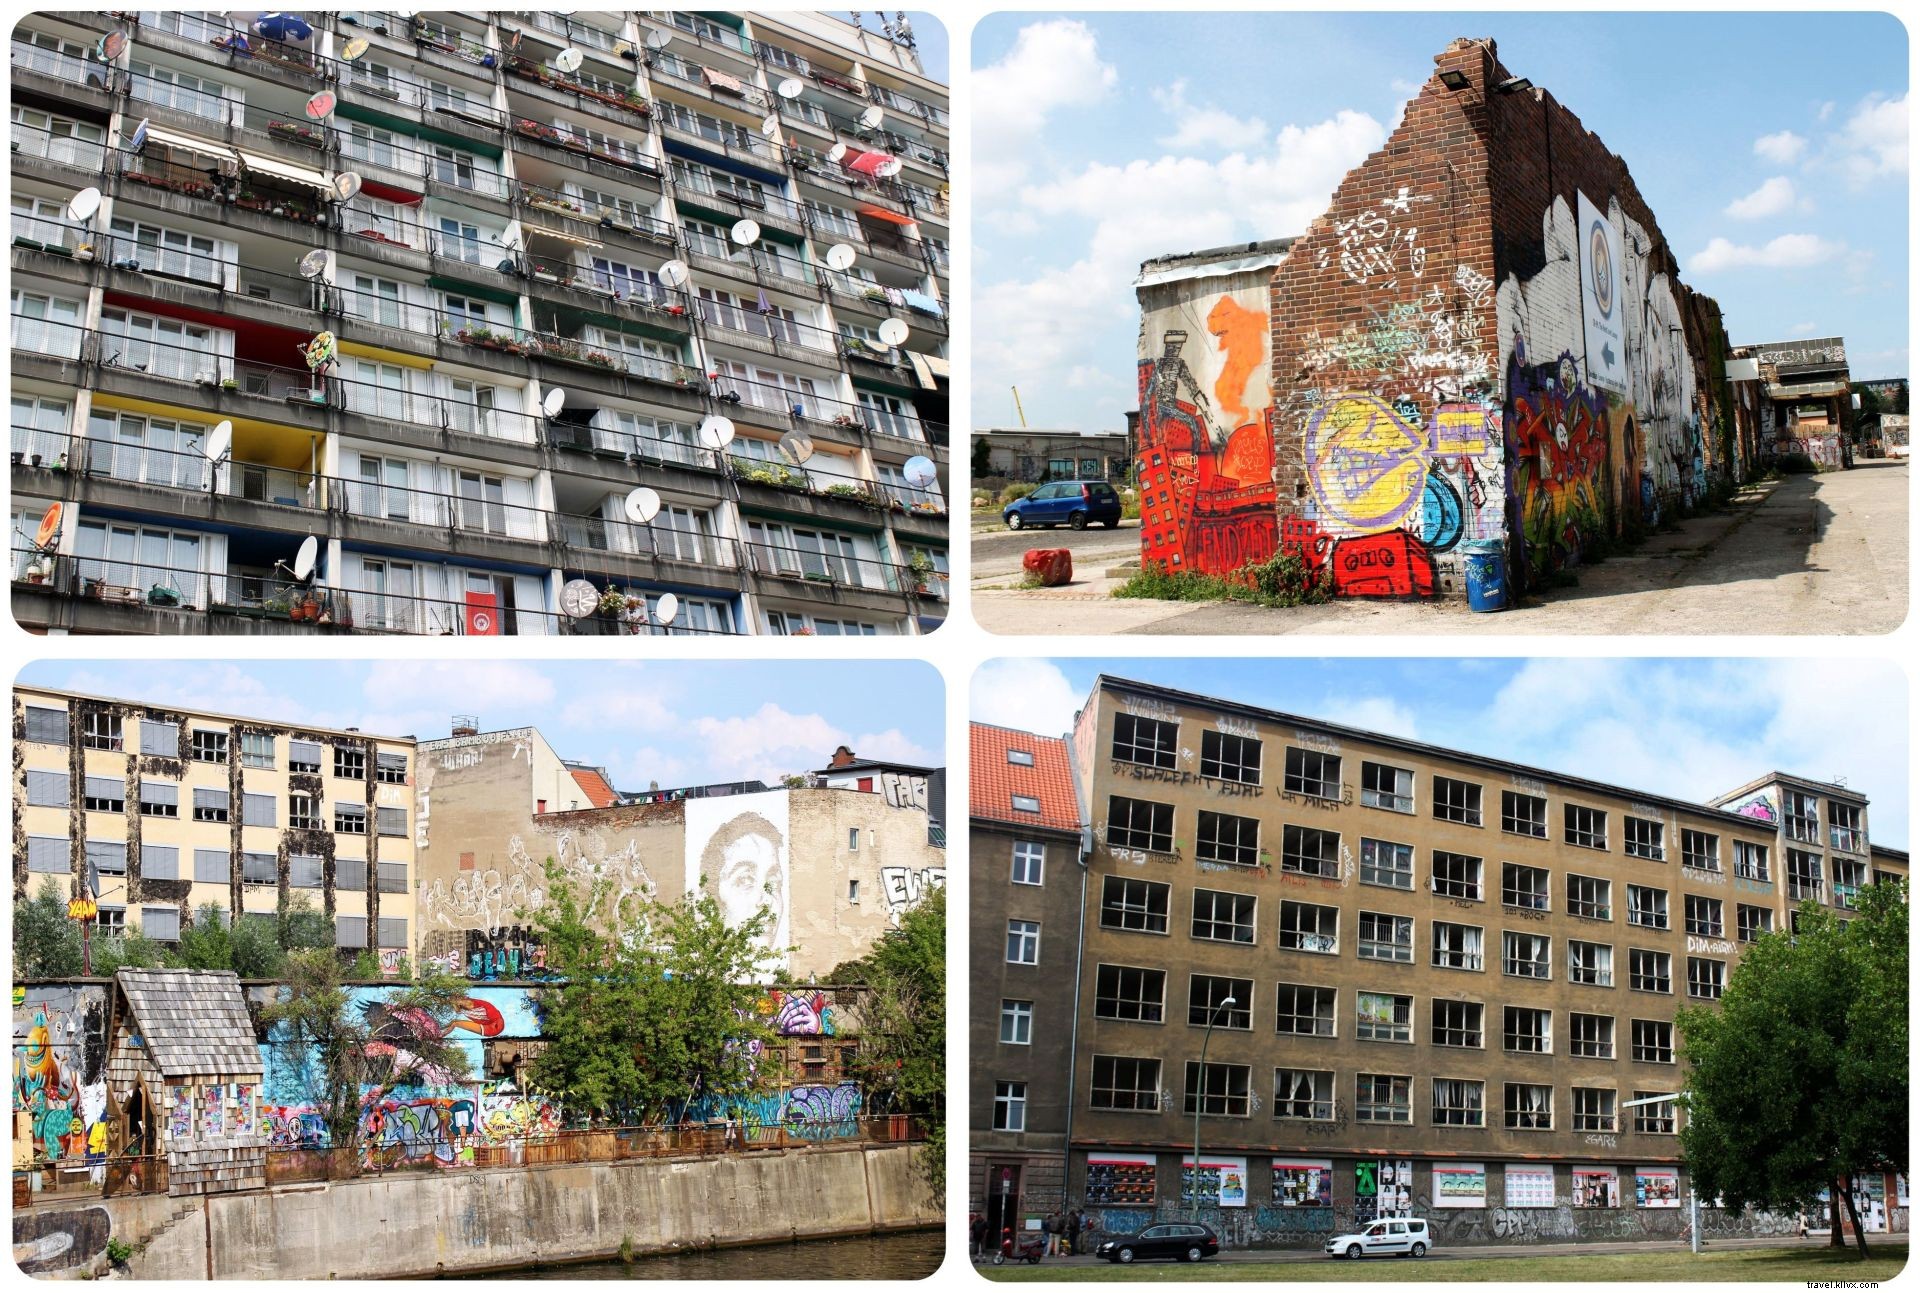 13 cose su Berlino che potrebbero sorprenderti